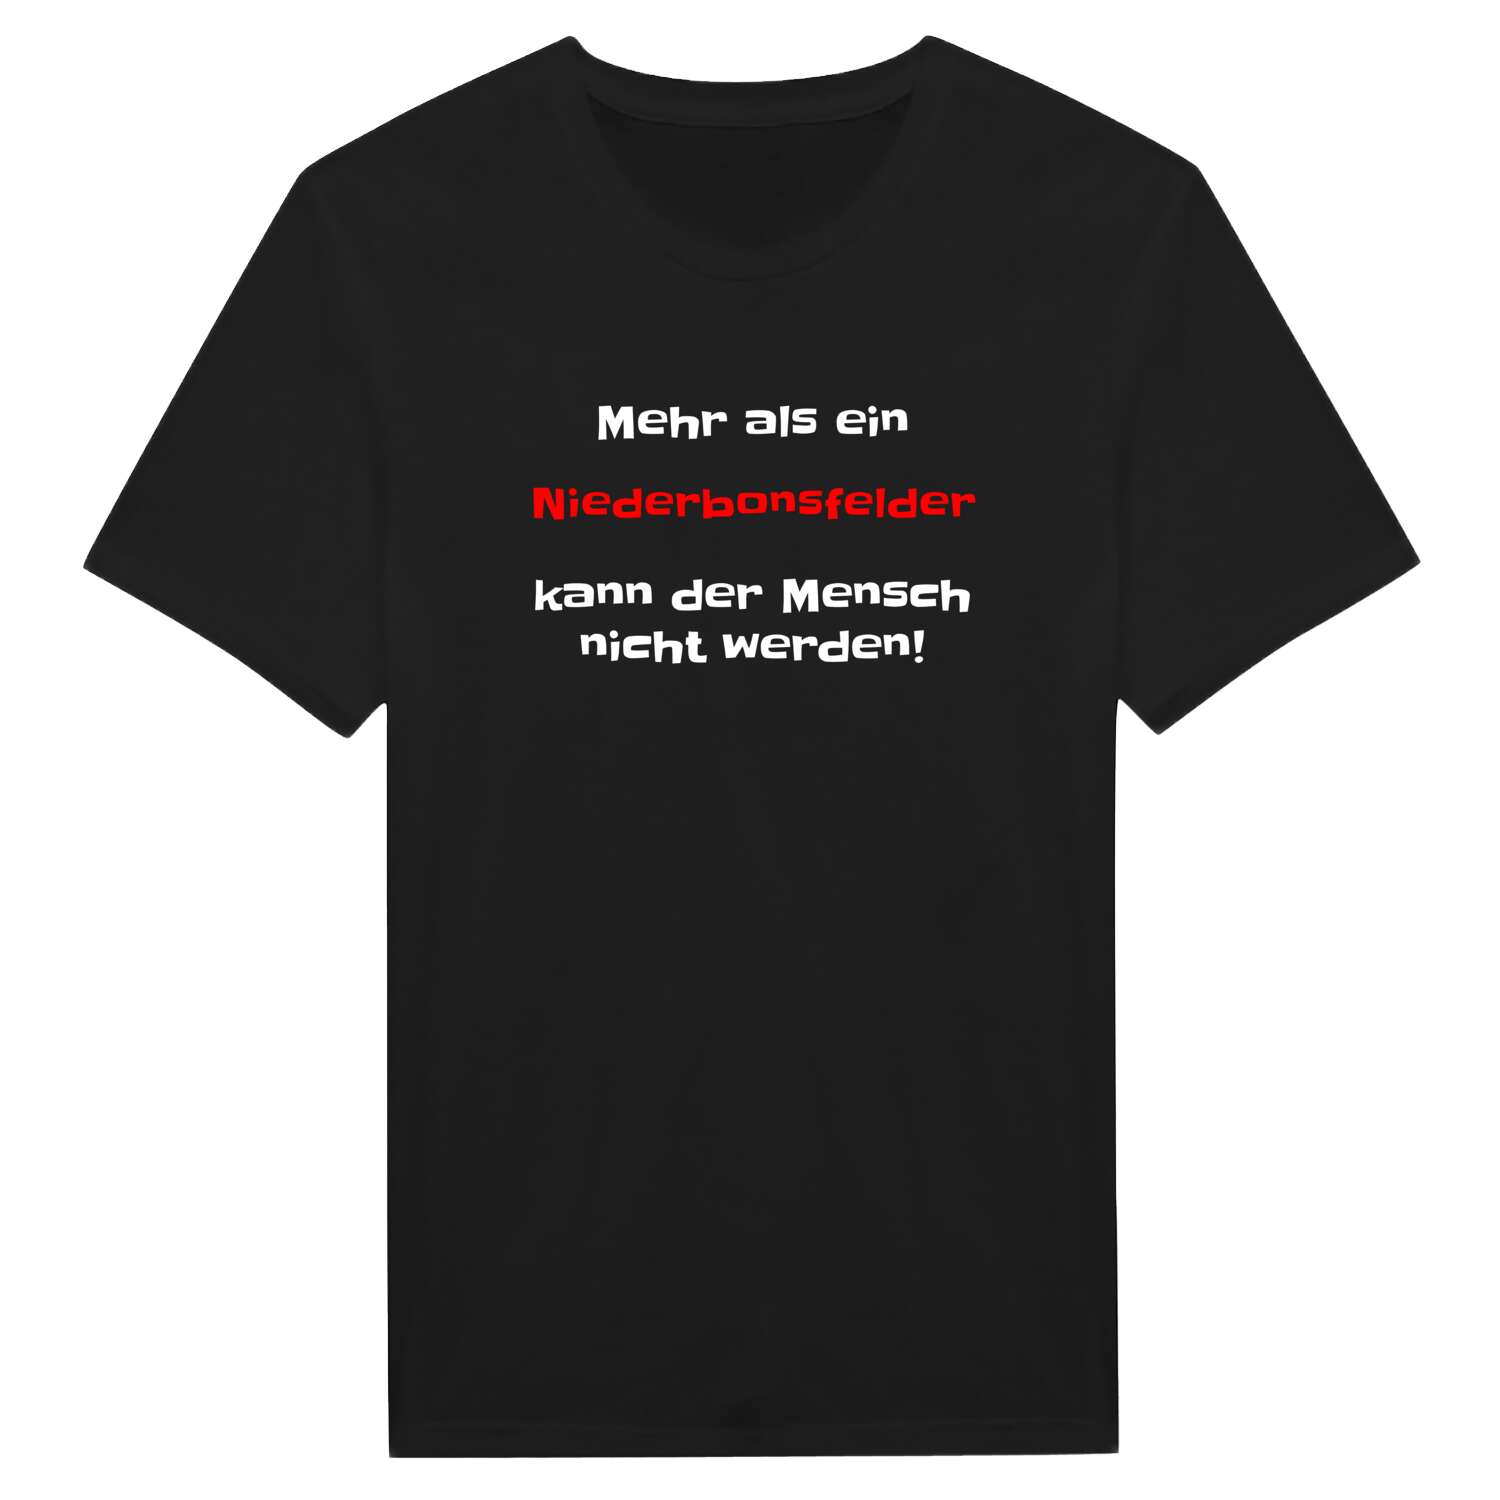 Niederbonsfeld T-Shirt »Mehr als ein«